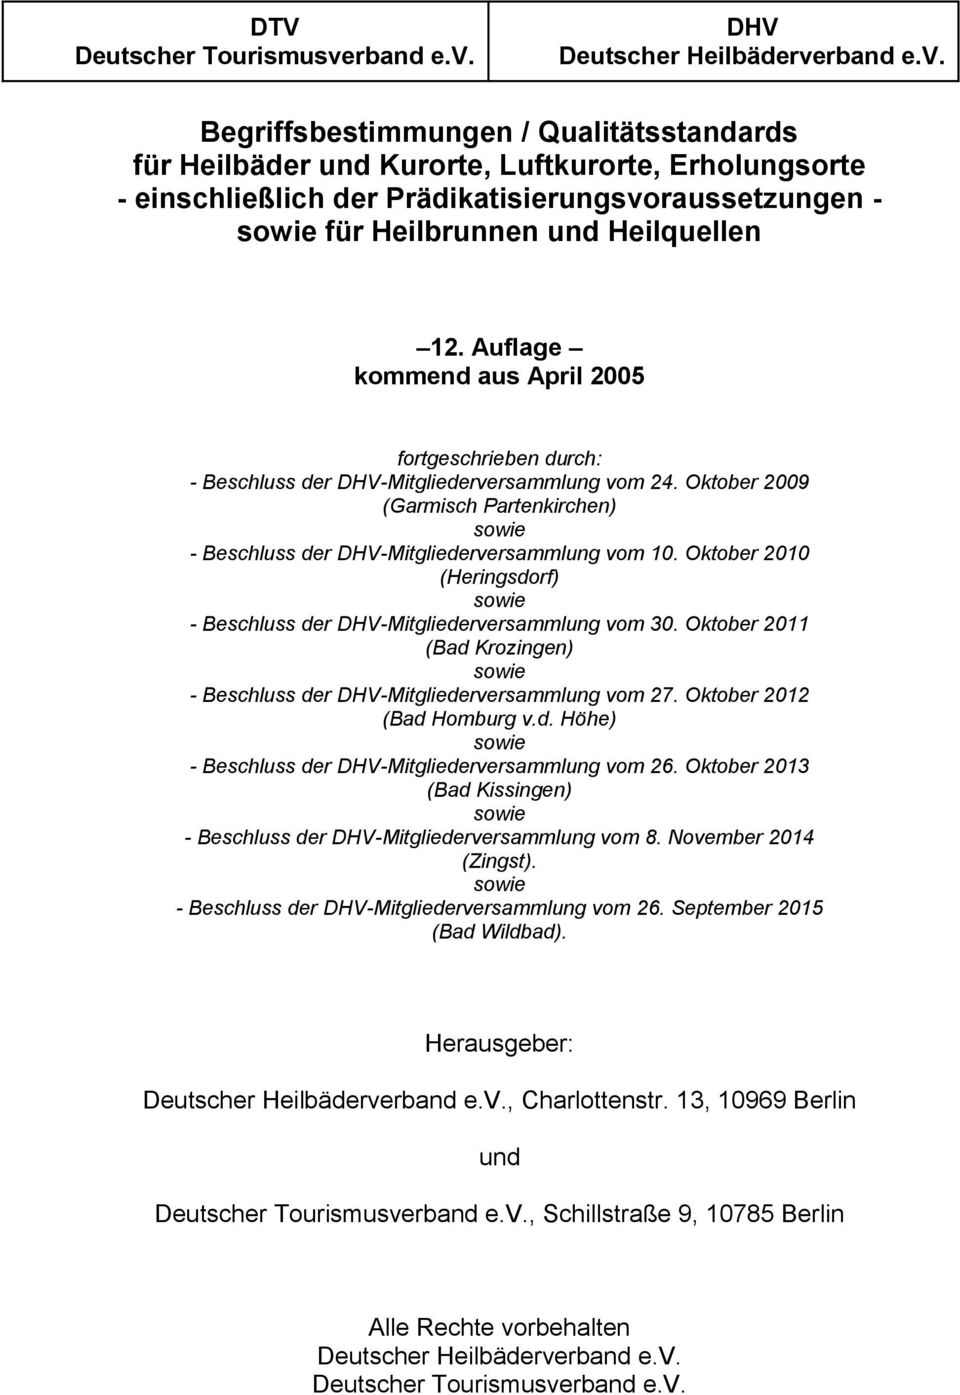 DHV Deutscher Heilbäderve Begriffsbestimmungen / Qualitätsstandards für Heilbäder und Kurorte, Luftkurorte, Erholungsorte - einschließlich der Prädikatisierungsvoraussetzungen - sowie für Heilbrunnen